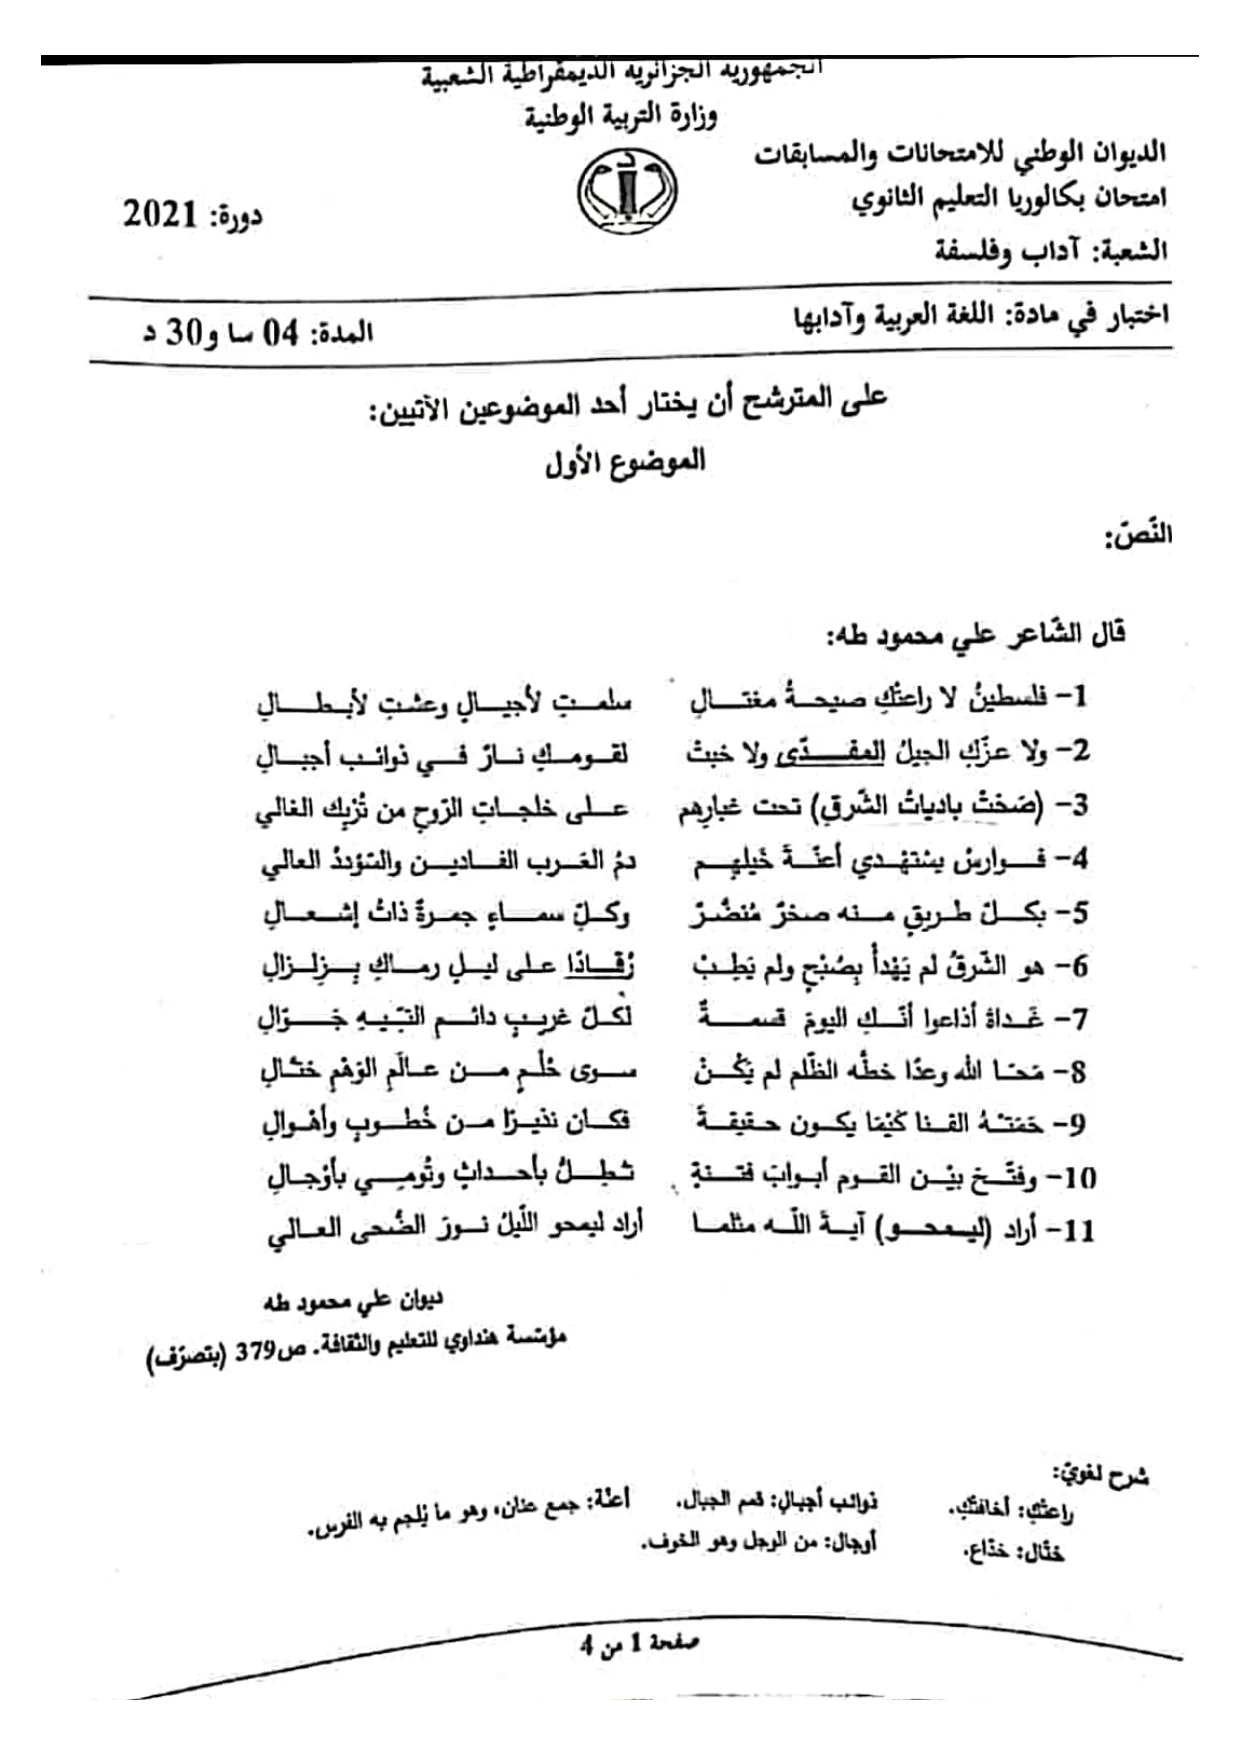 موضوع اللغة العربية شعبة آداب وفلسفة بكالوريا 2021 تحميل